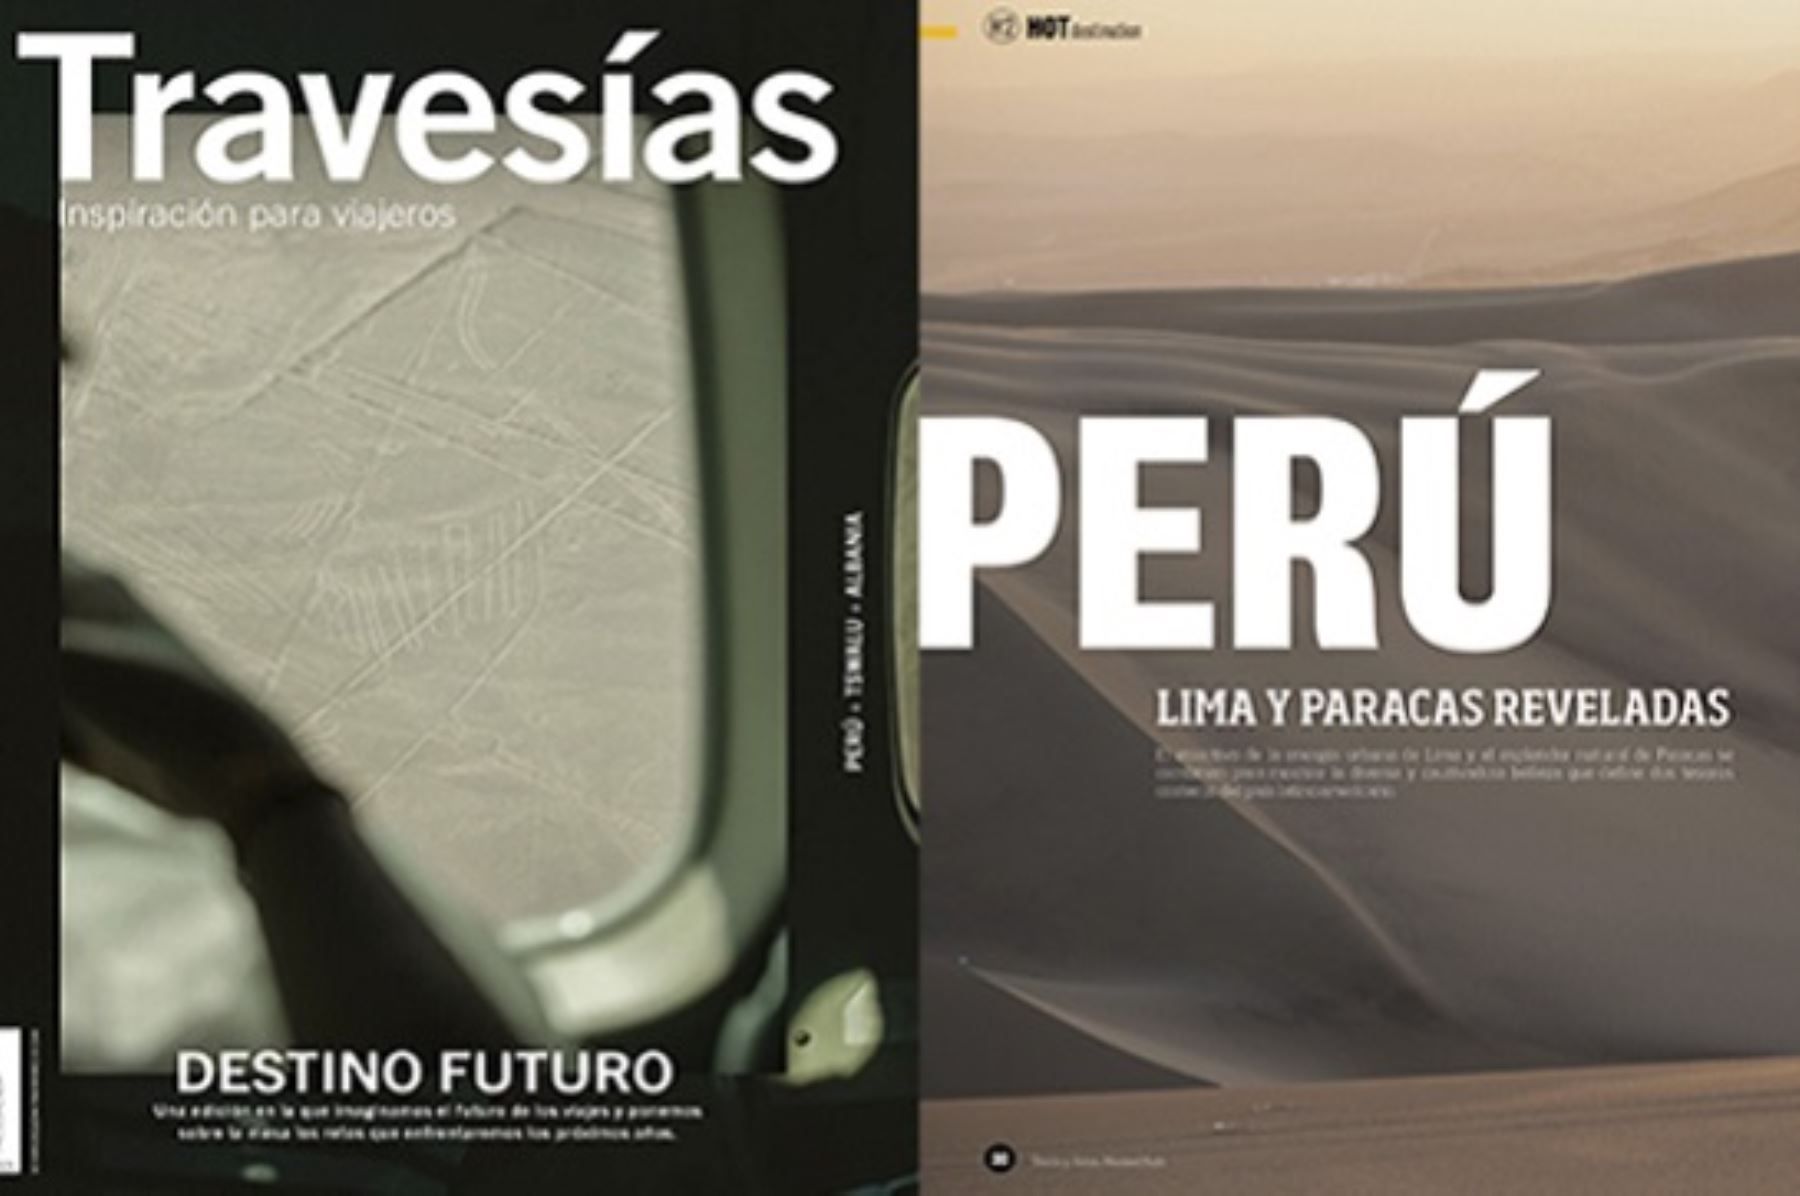 Revistas mexicanas destacaron los destinos turísticos de Ica y Lima. Foto: Cortesía.